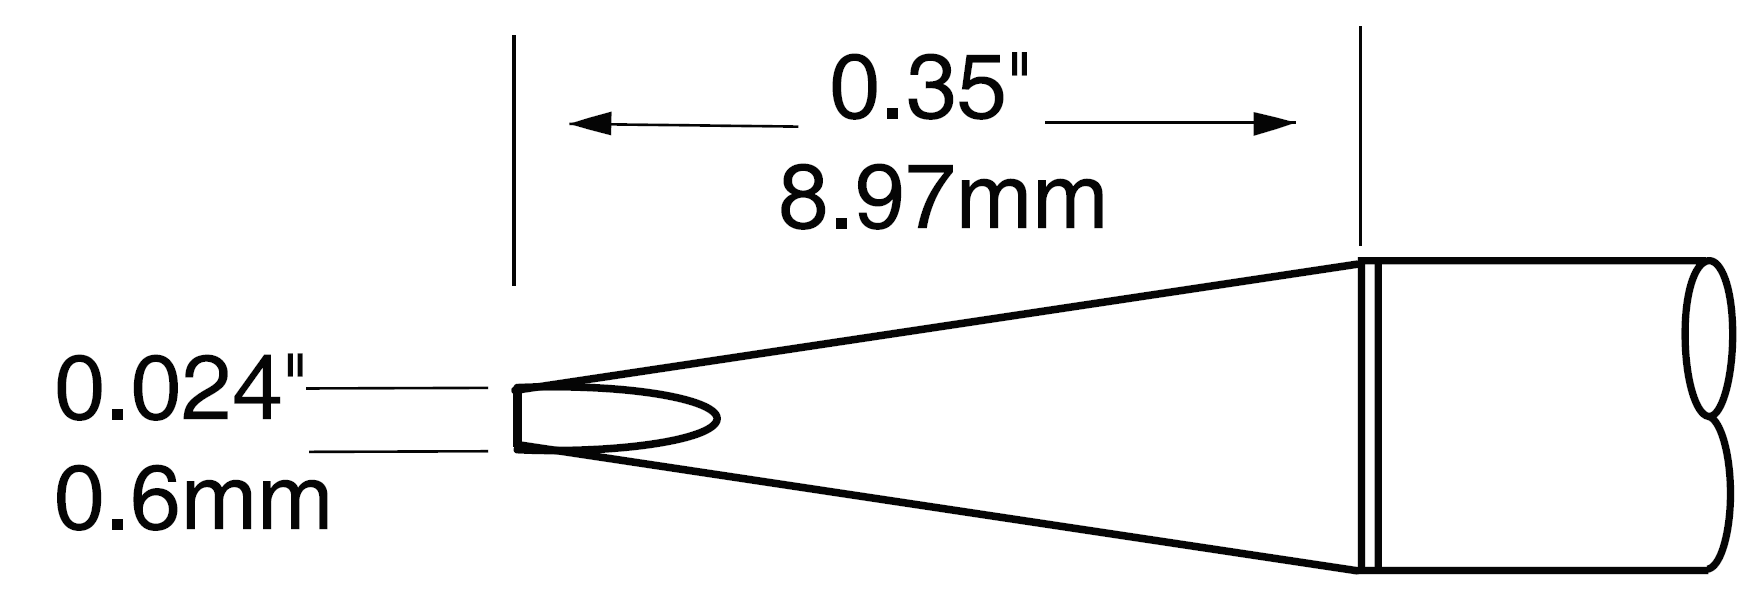 Картридж-наконечник для MX-UF, клин удлиненный, 0.6х9.0мм